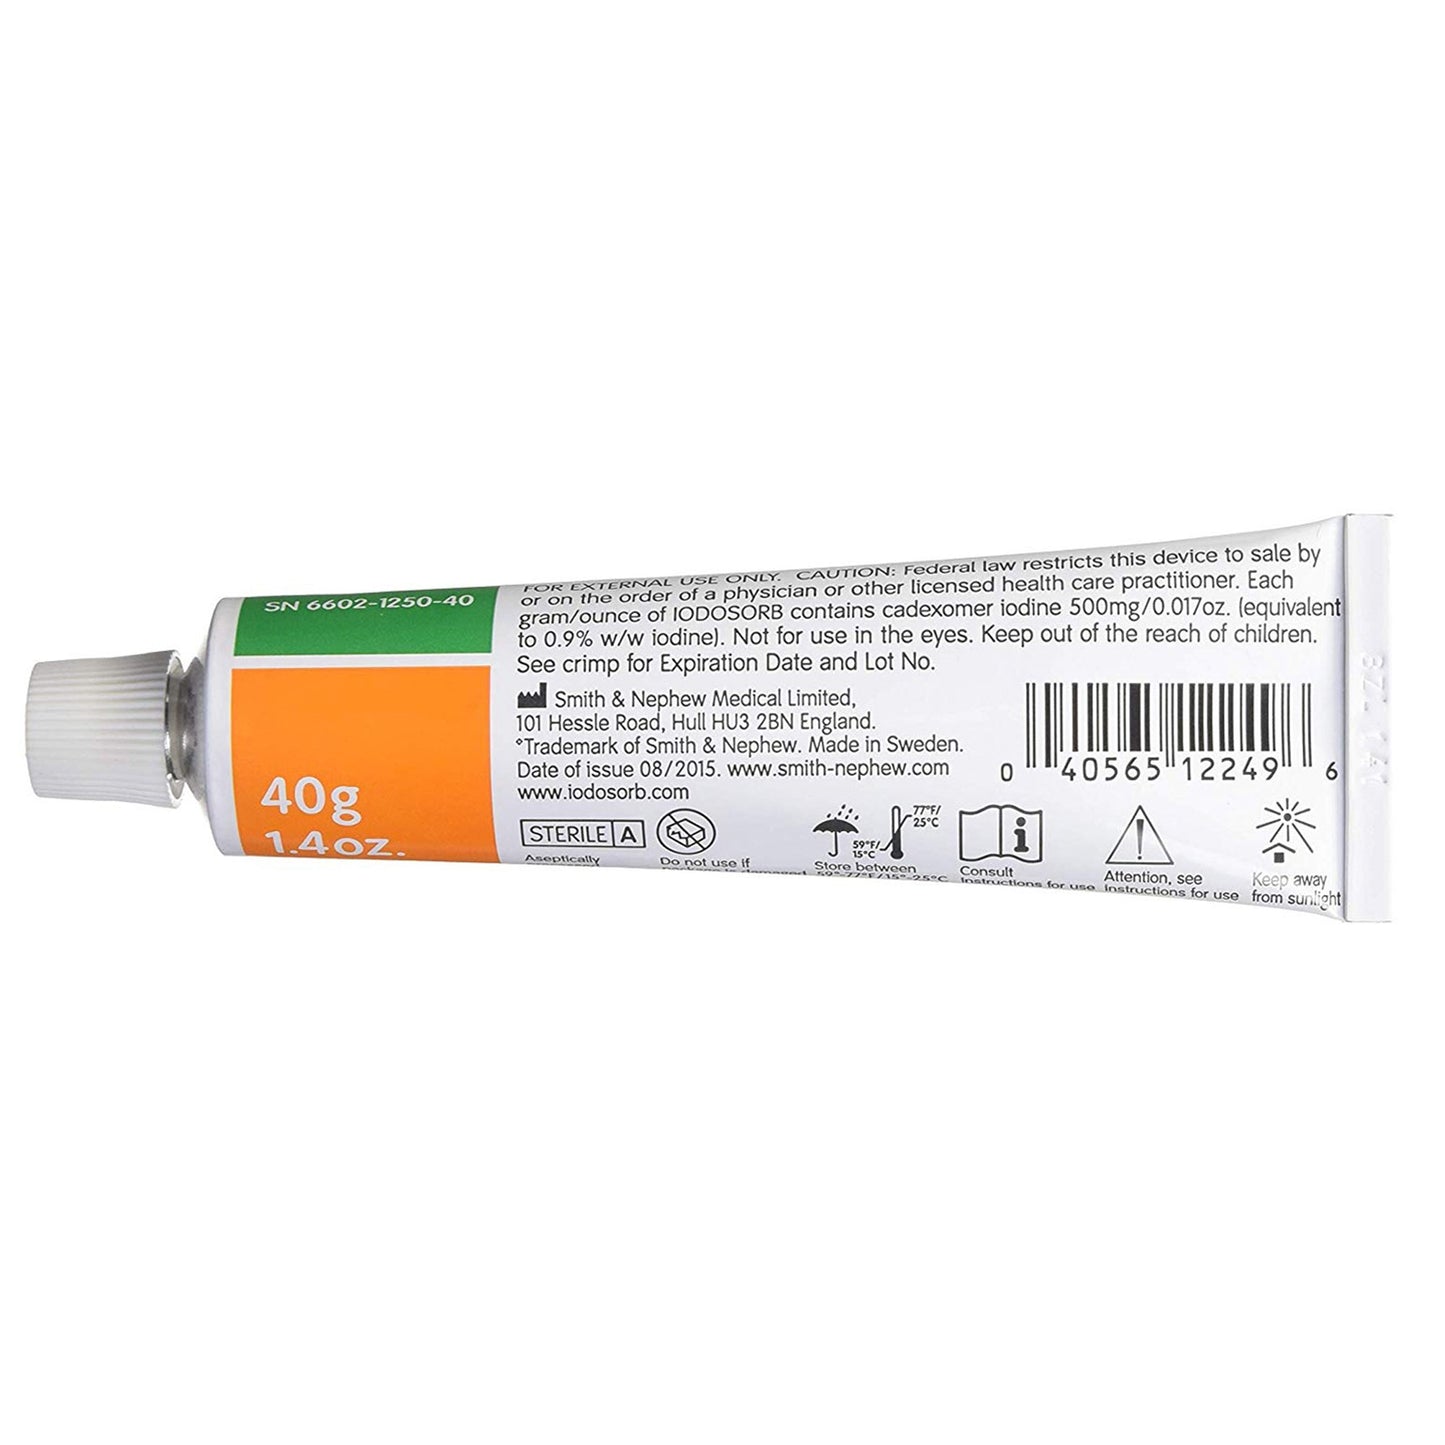 Iodosorb Antimicrobial Wound Gel, 1.4 oz.